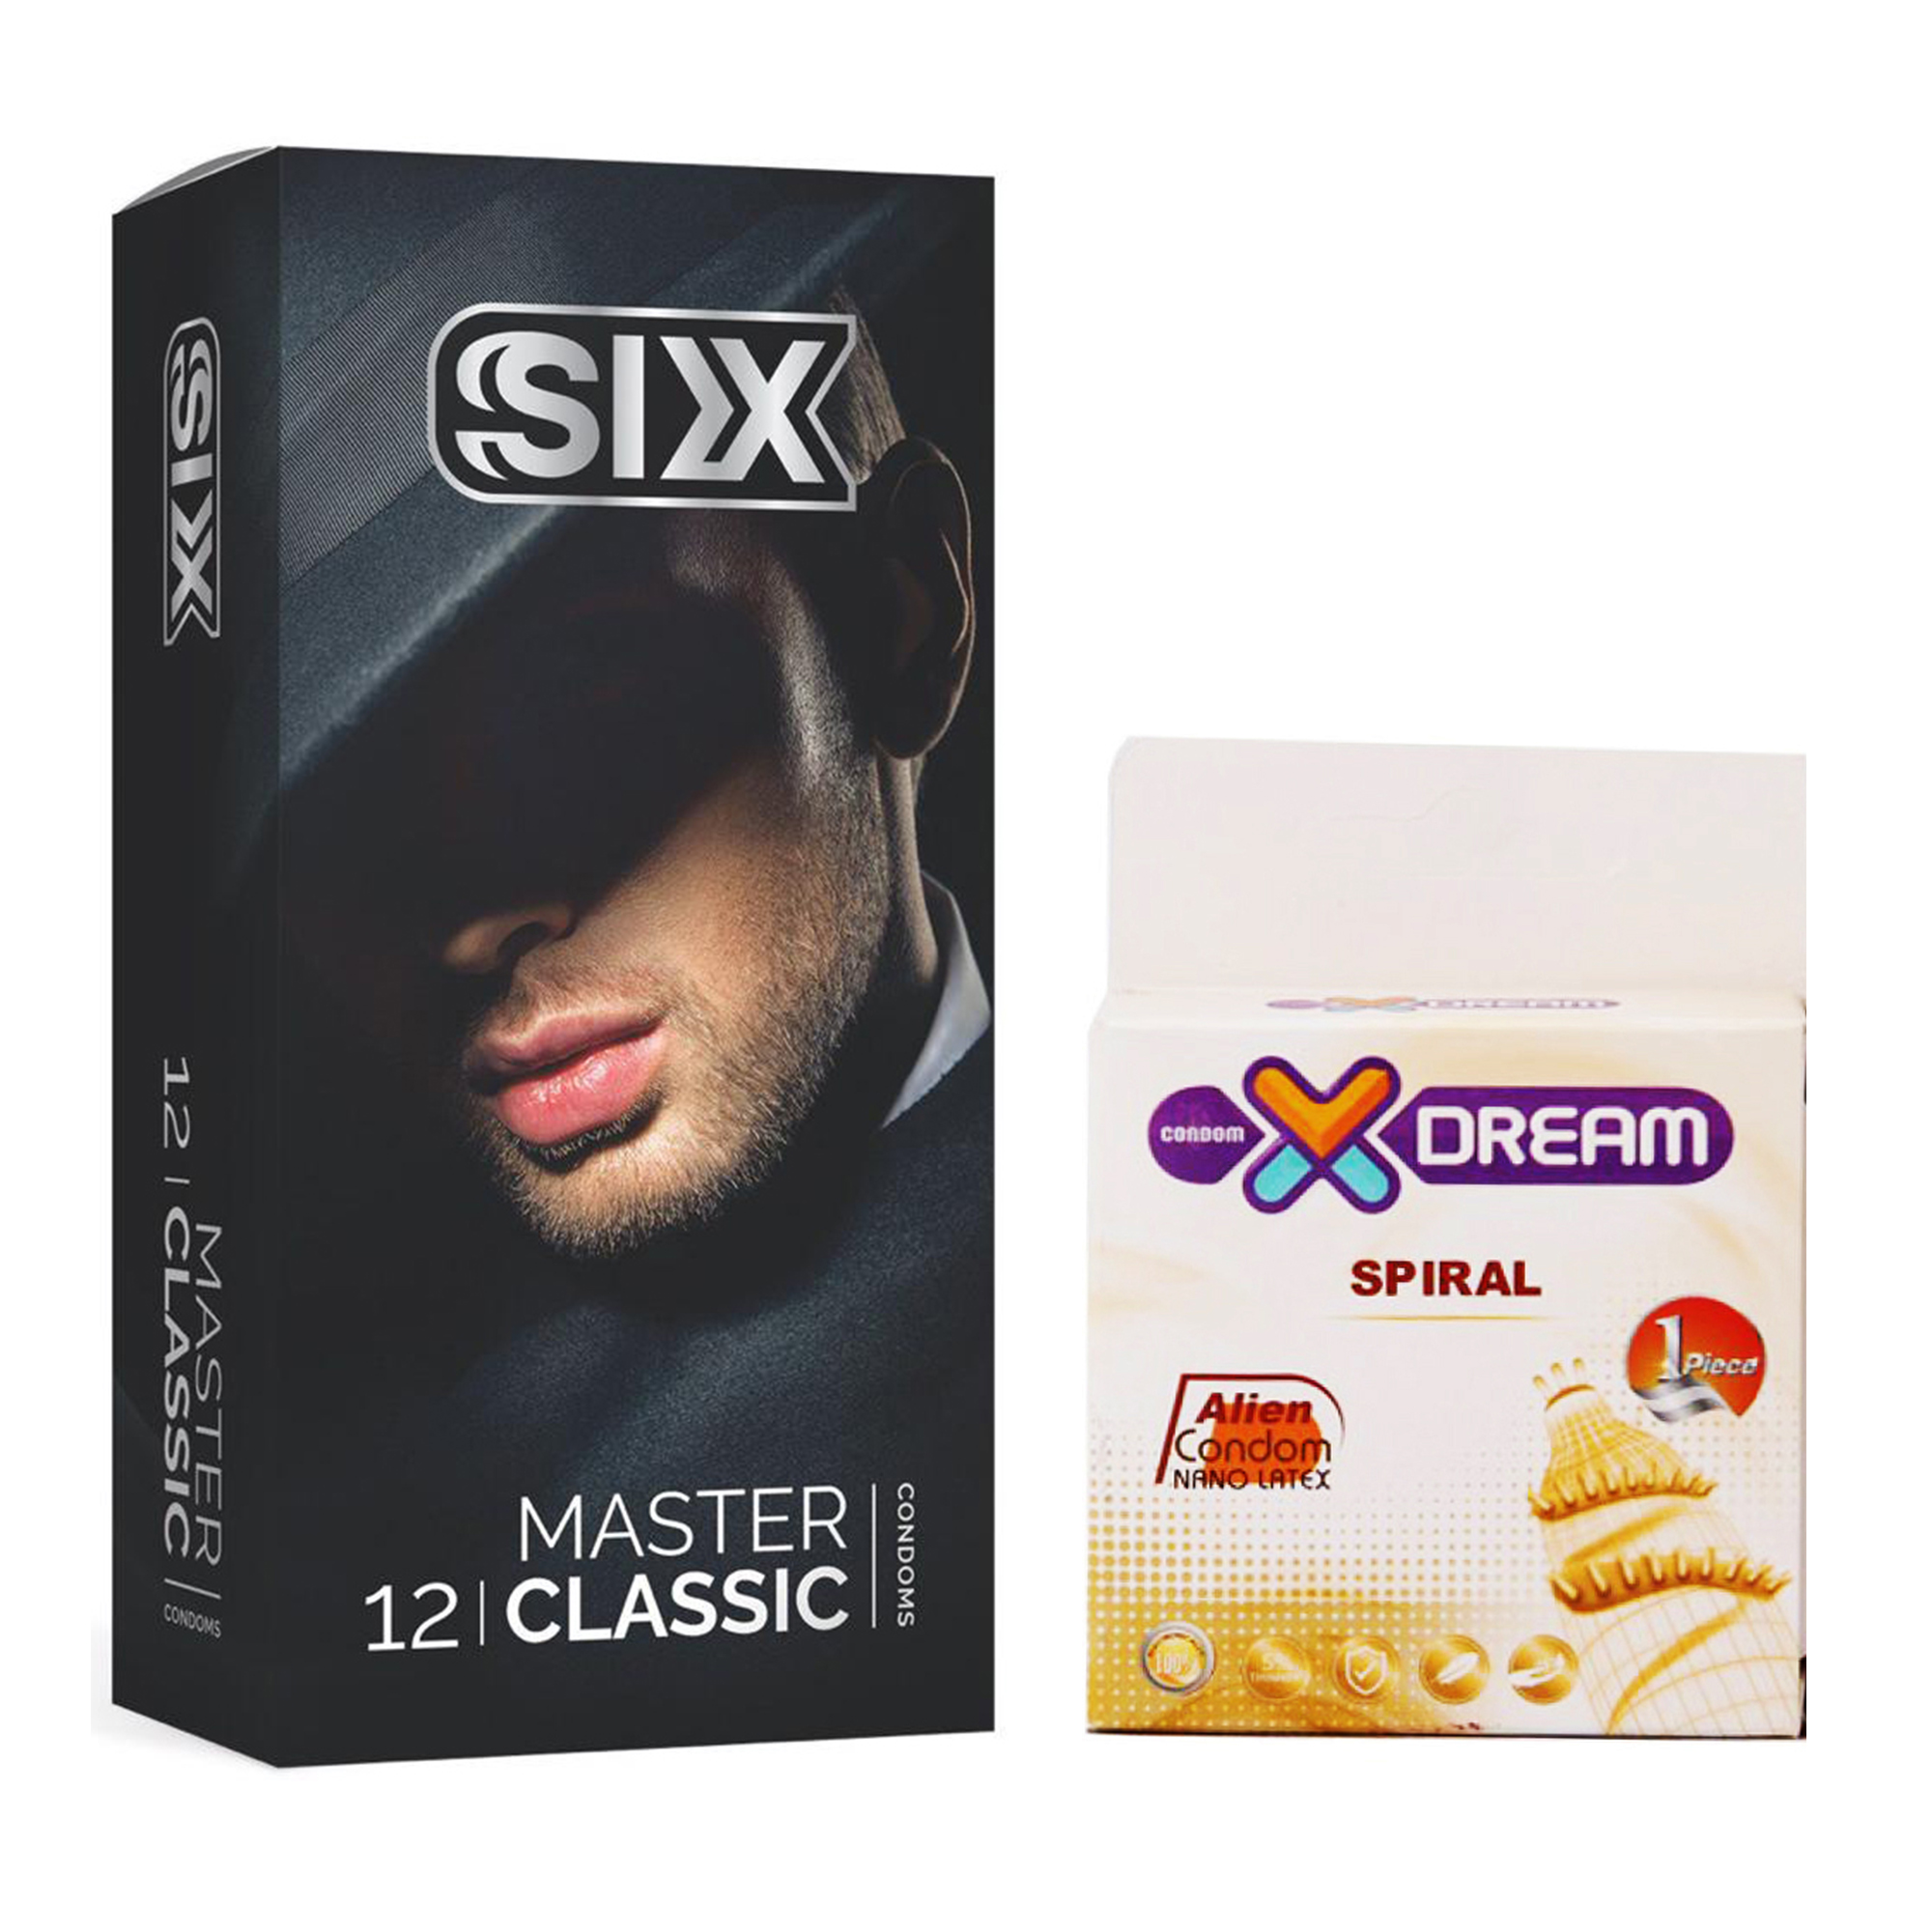 کاندوم سیکس مدل Master Classic بسته 12 عددی به همراه کاندوم ایکس دریم مدل Spiral